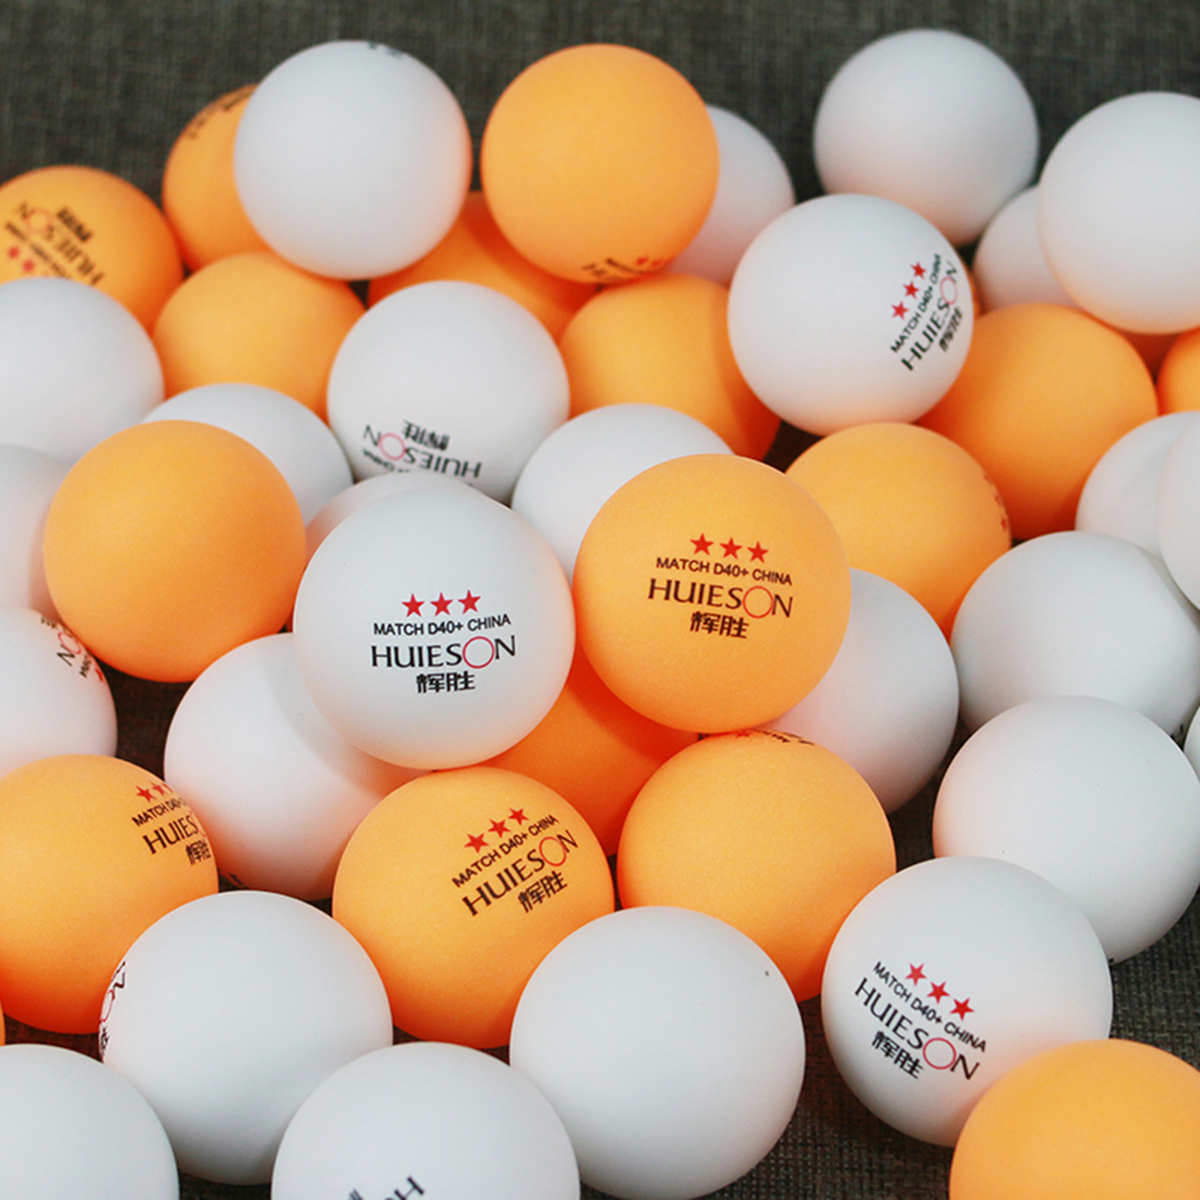 Игра с шариками пинг понг. Мячи для настольного тенниса «Guanxi» белые 40 мм, 3 звезды, уп: 3 шт.. Double Fish Table Tennis Ball мячи 6 шт. Теннисный мяч пинг понг. Теннисные мячи для пинг понга.